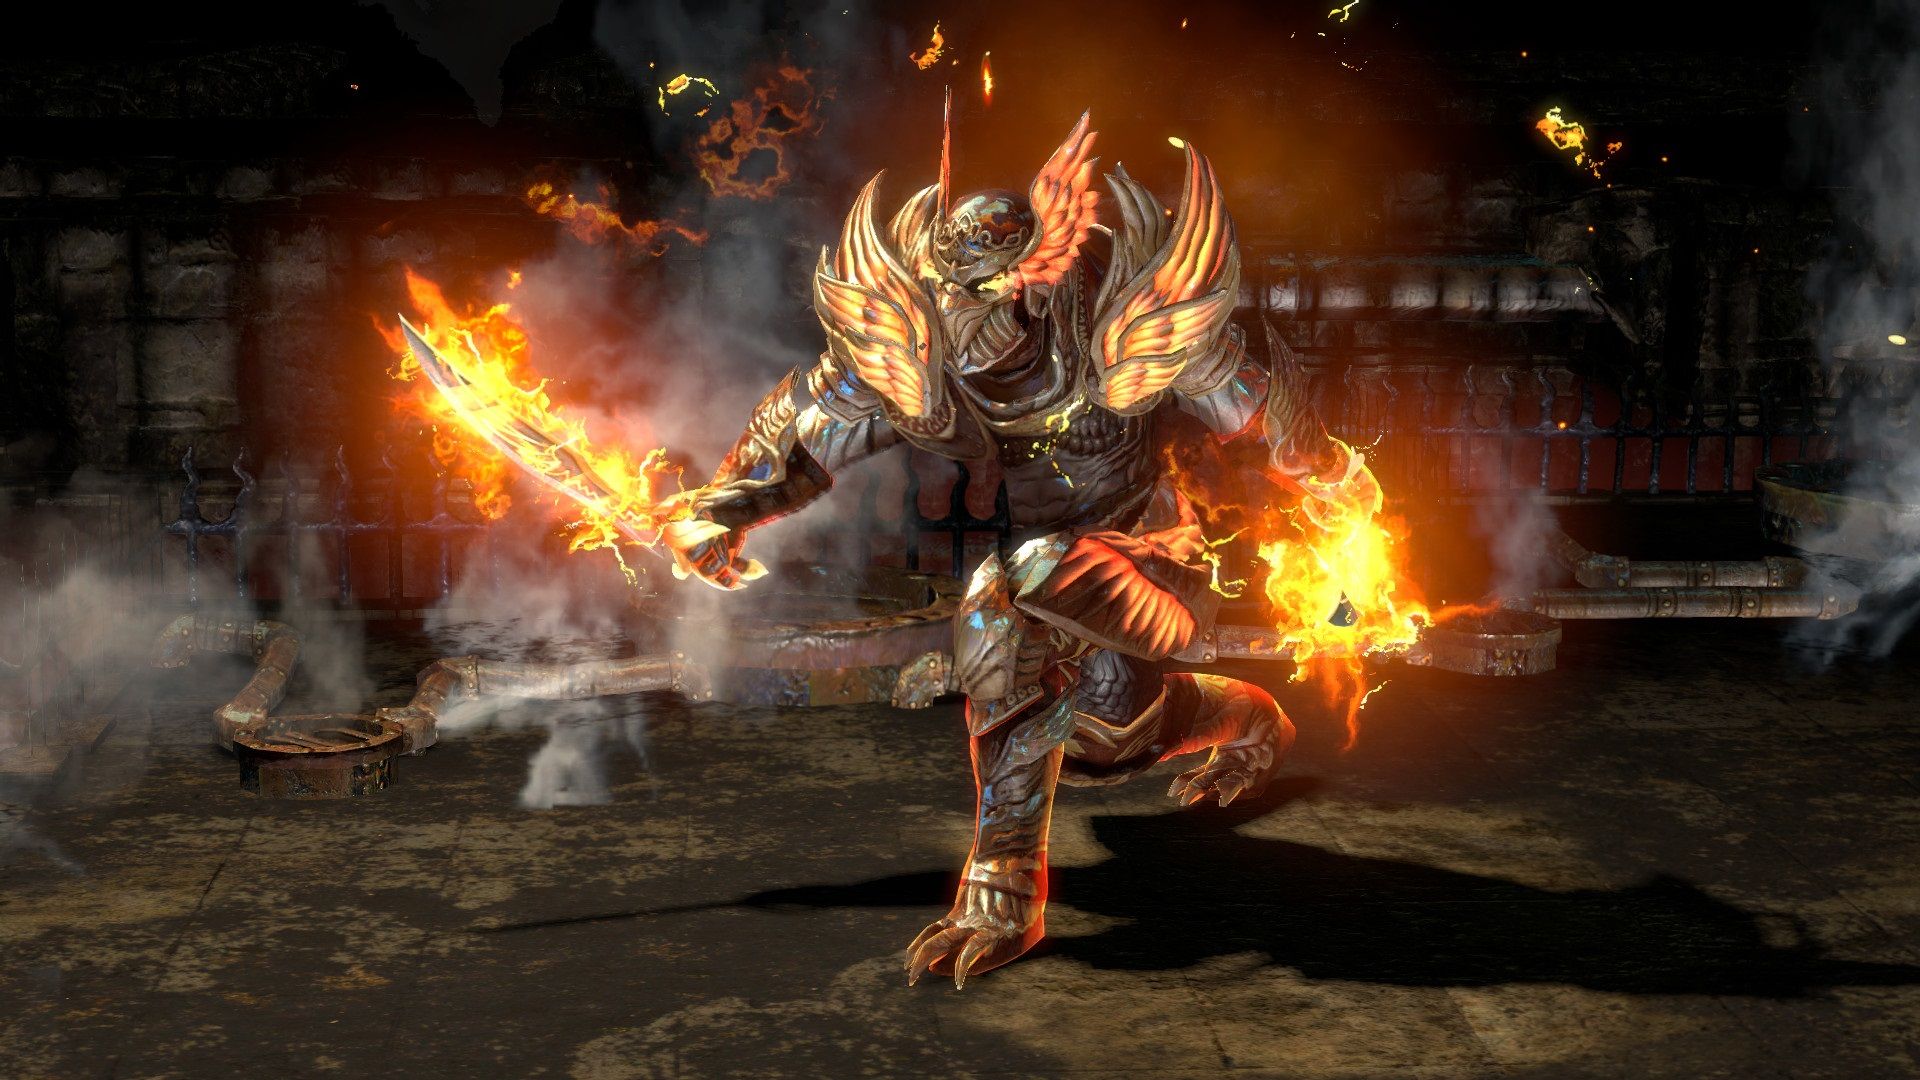 Migliori giochi per PC gratuiti: Path of Exile. L'immagine mostra una preoccupazione con l'armatura fiammeggiante e una spada fiammeggiante